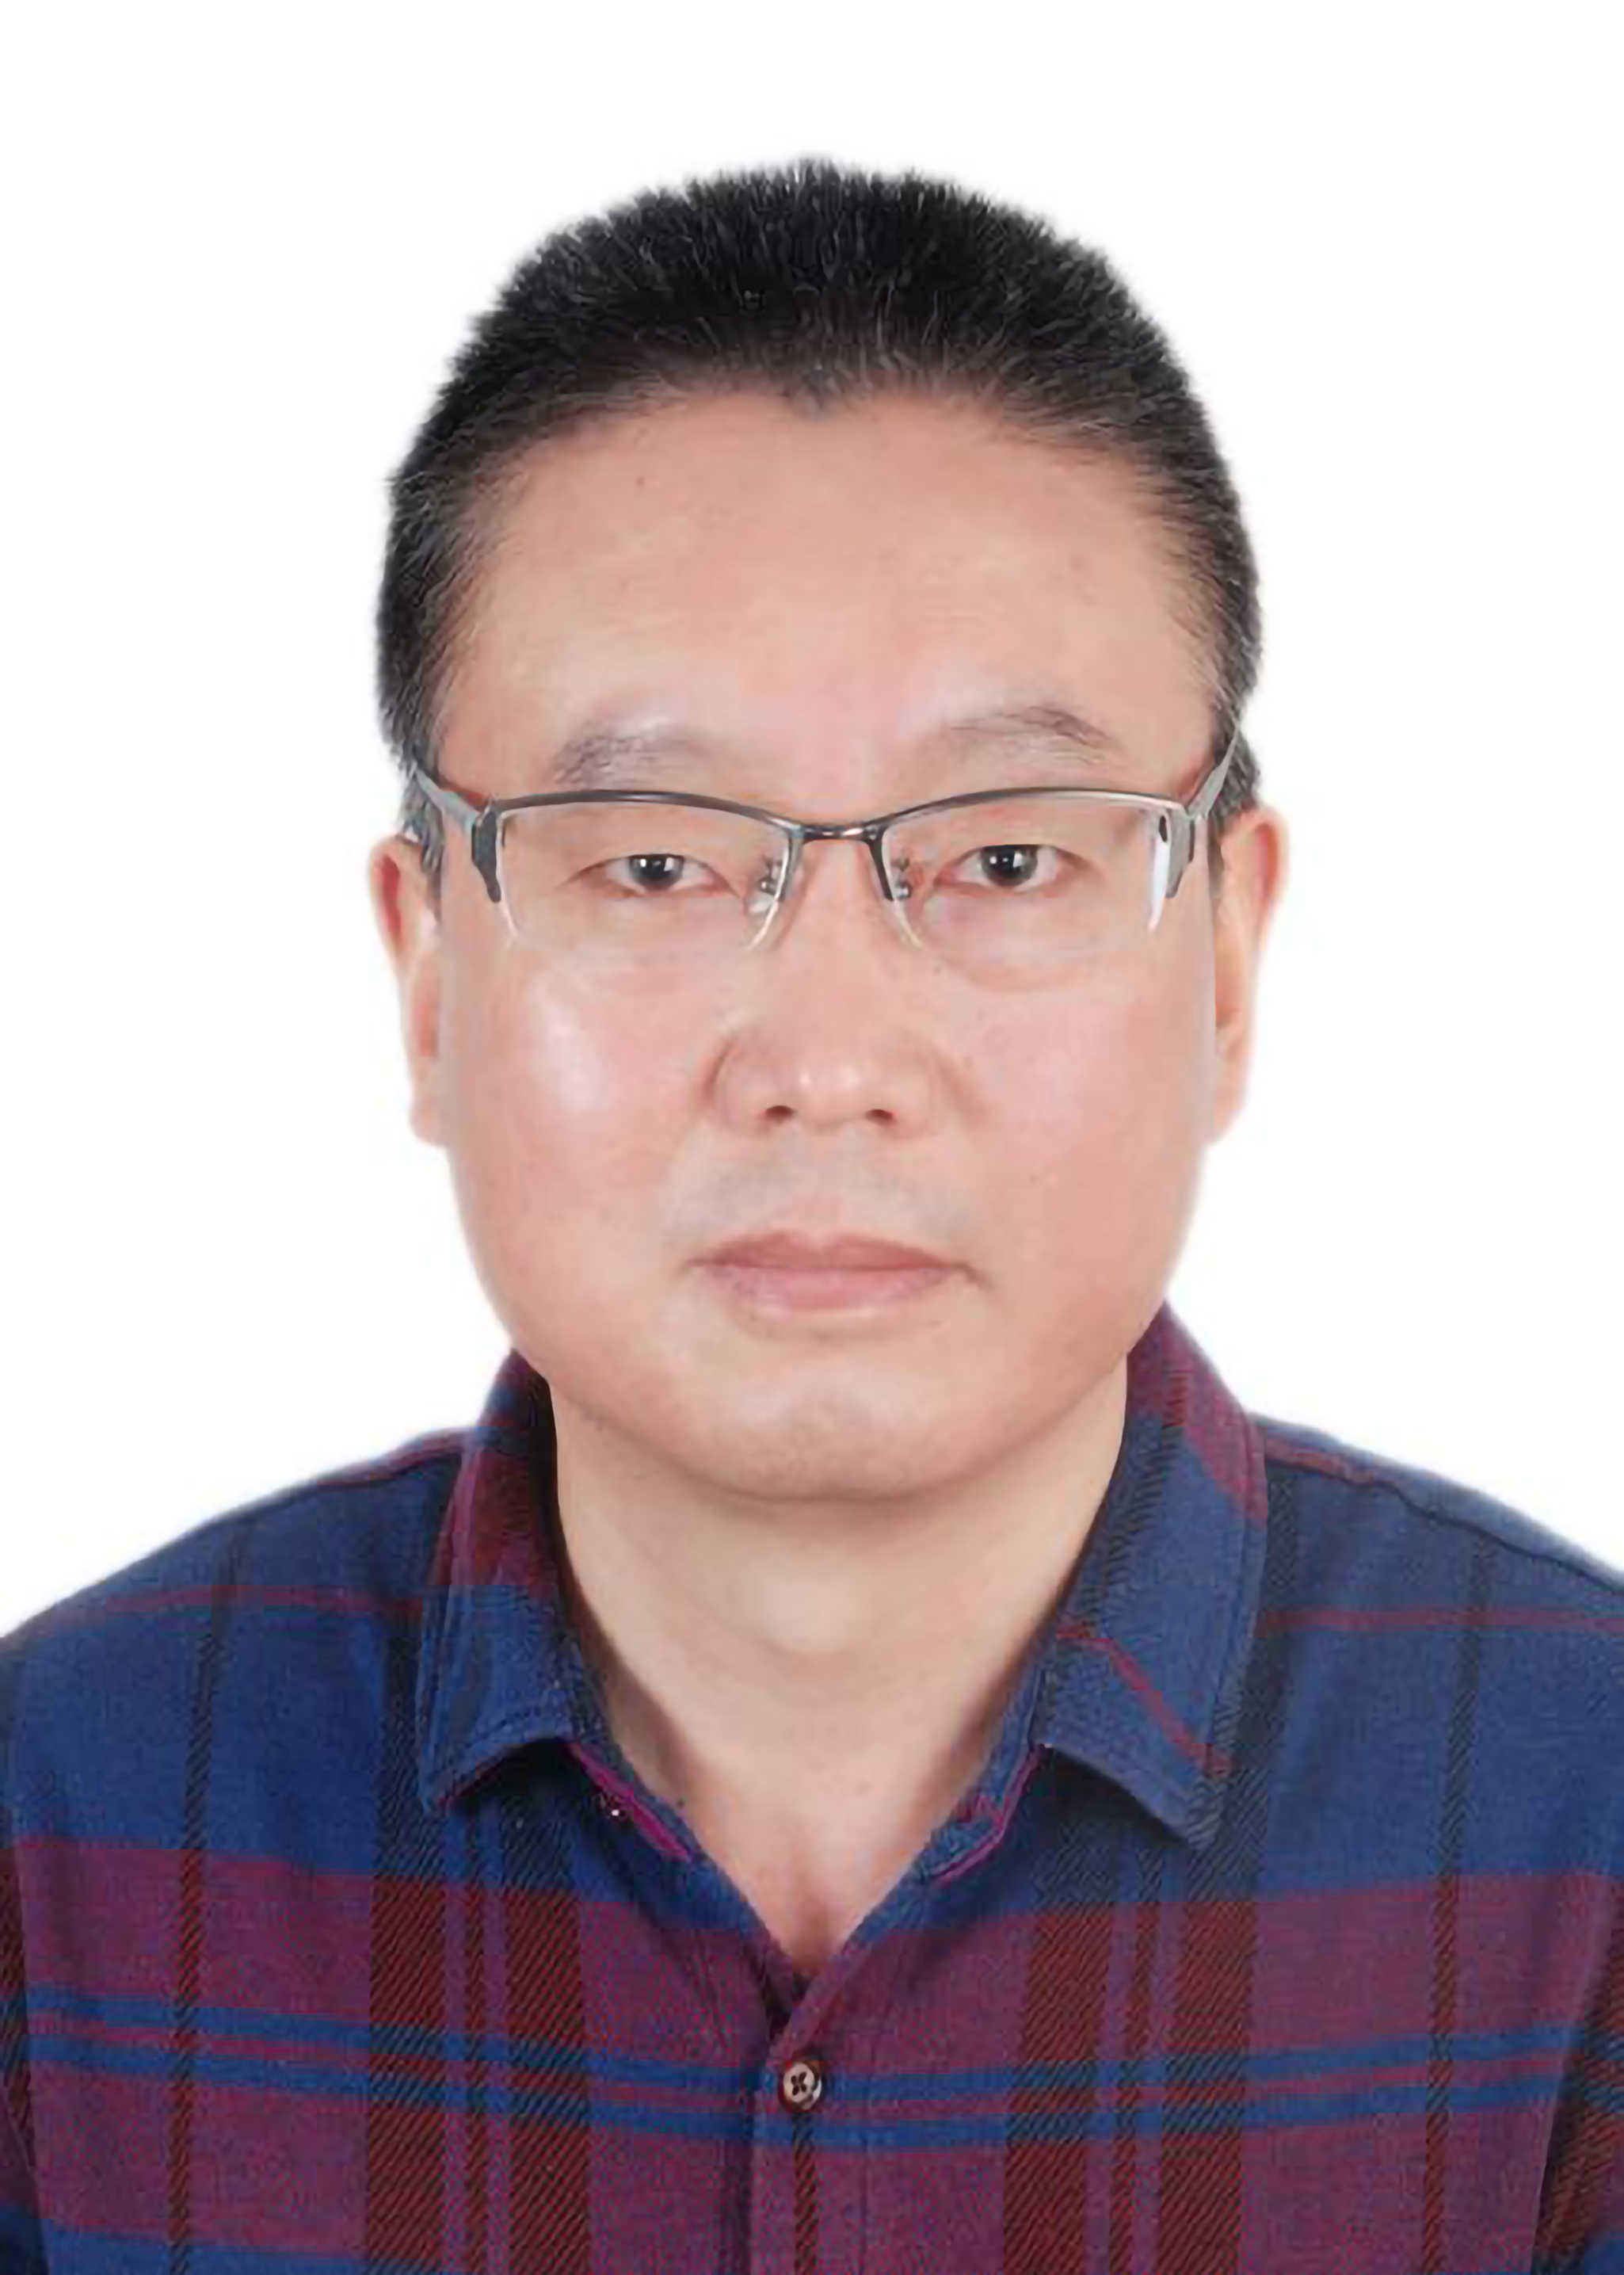 朱健,研究员,南京农业大学,上海海洋大学硕士生导师,主要研究方向生态